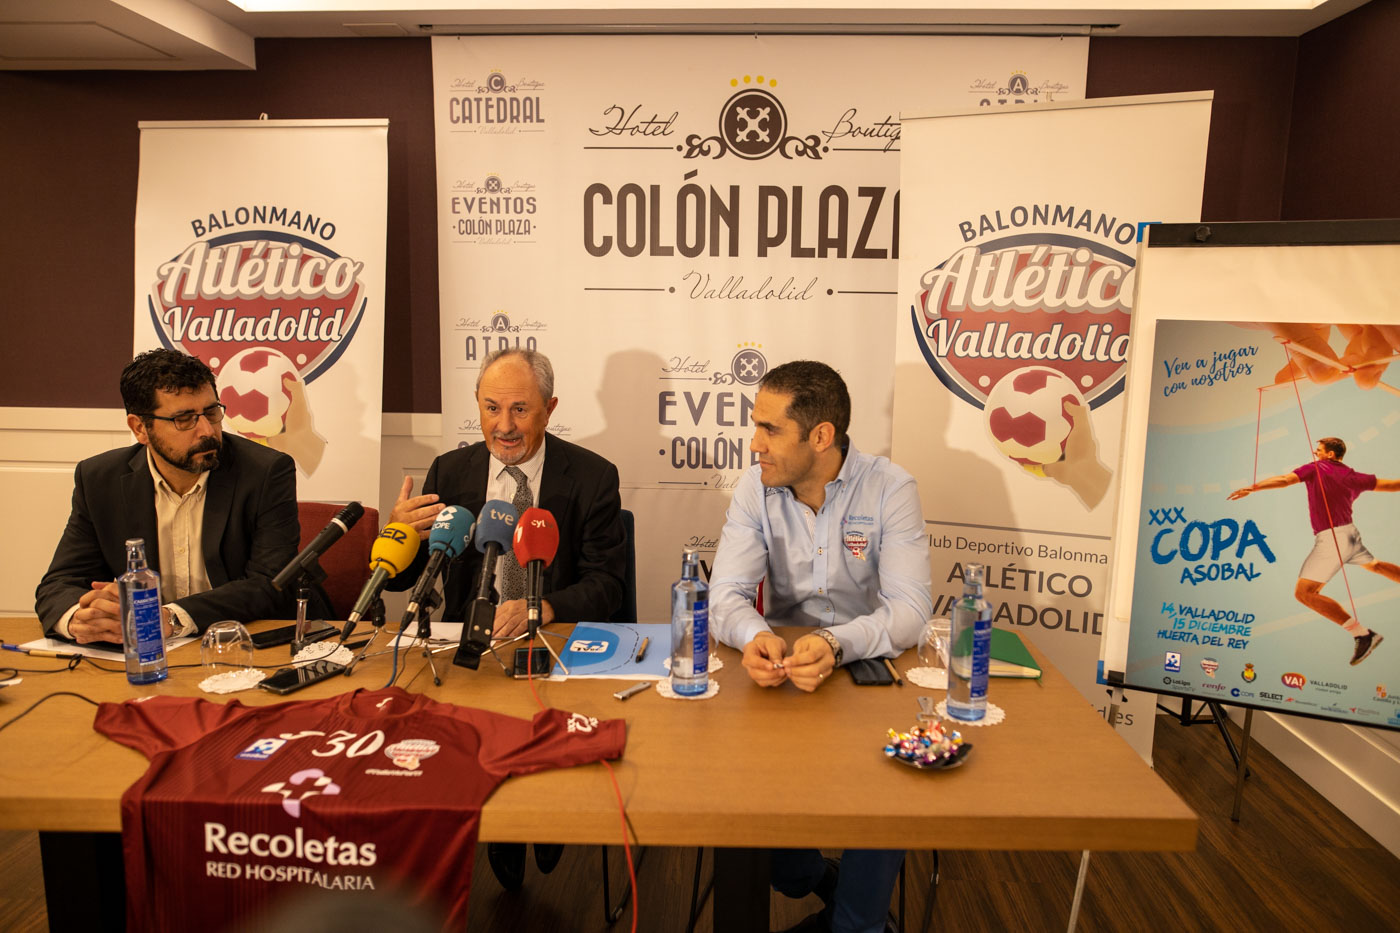 La Copa ASOBAL de Valladolid se pone en marcha | Galería 4 / 8